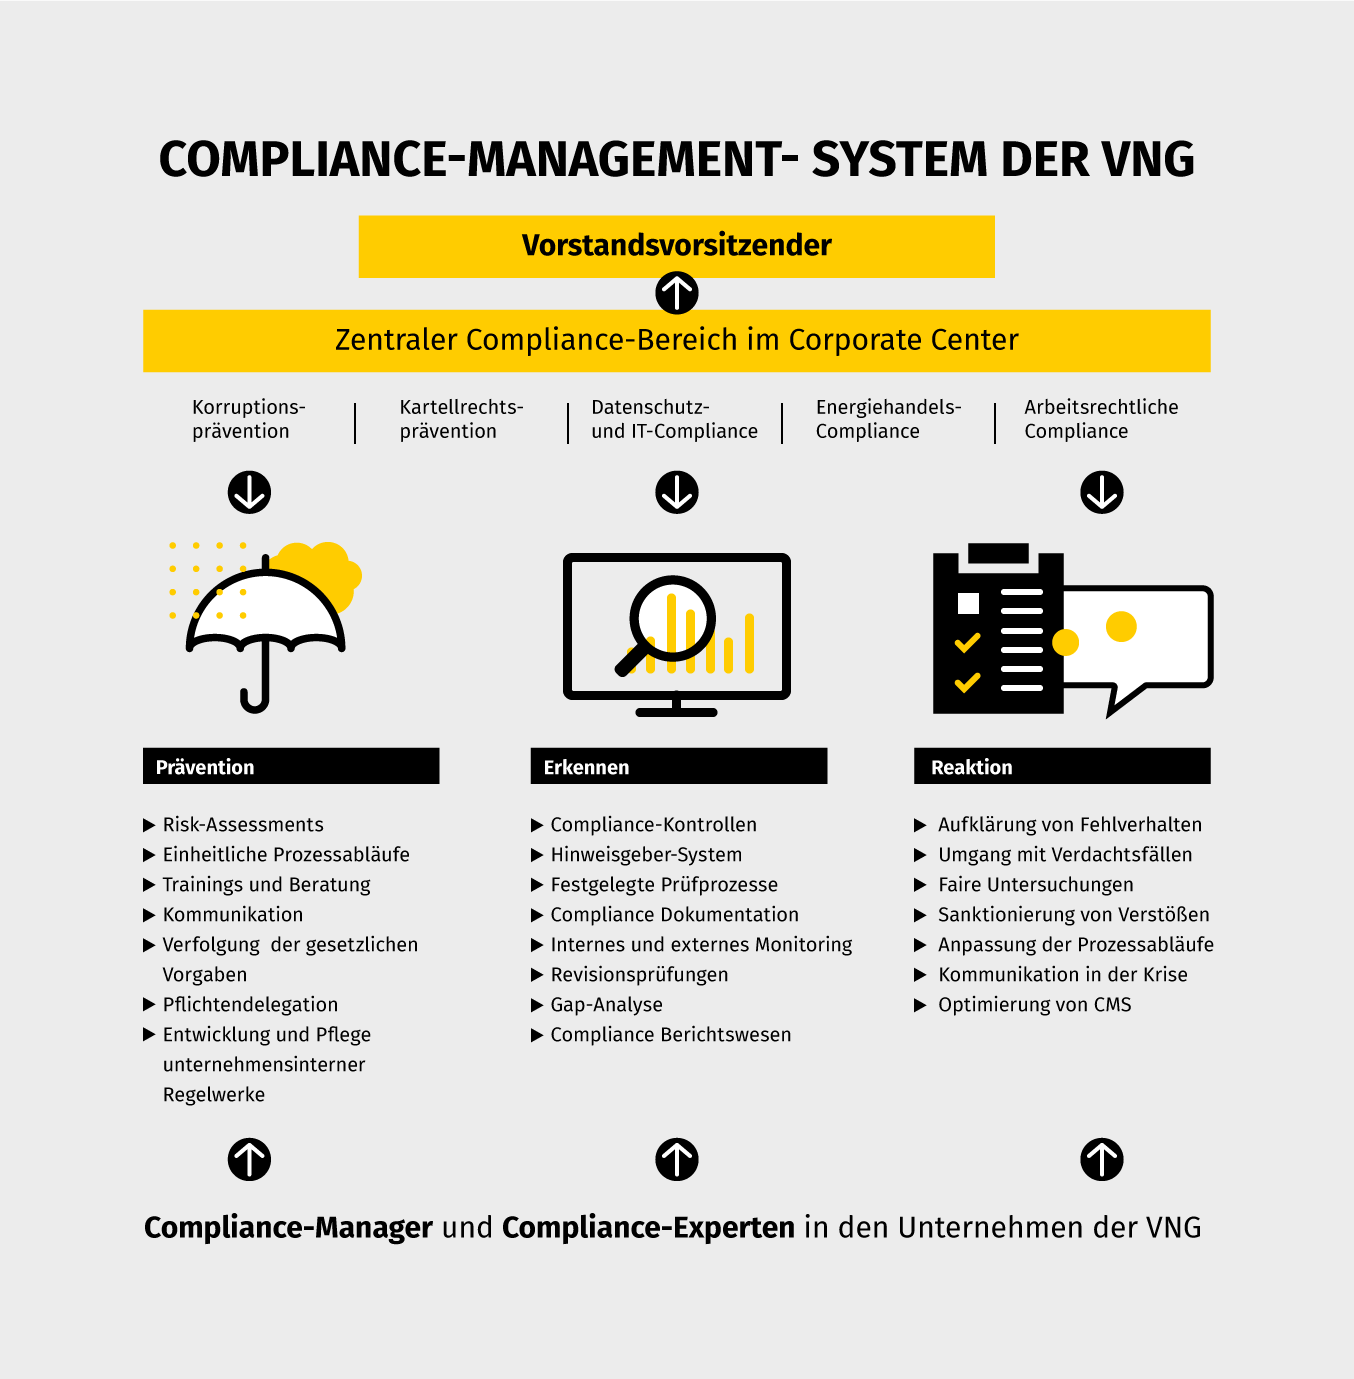 Compliance-Management-System der VNG